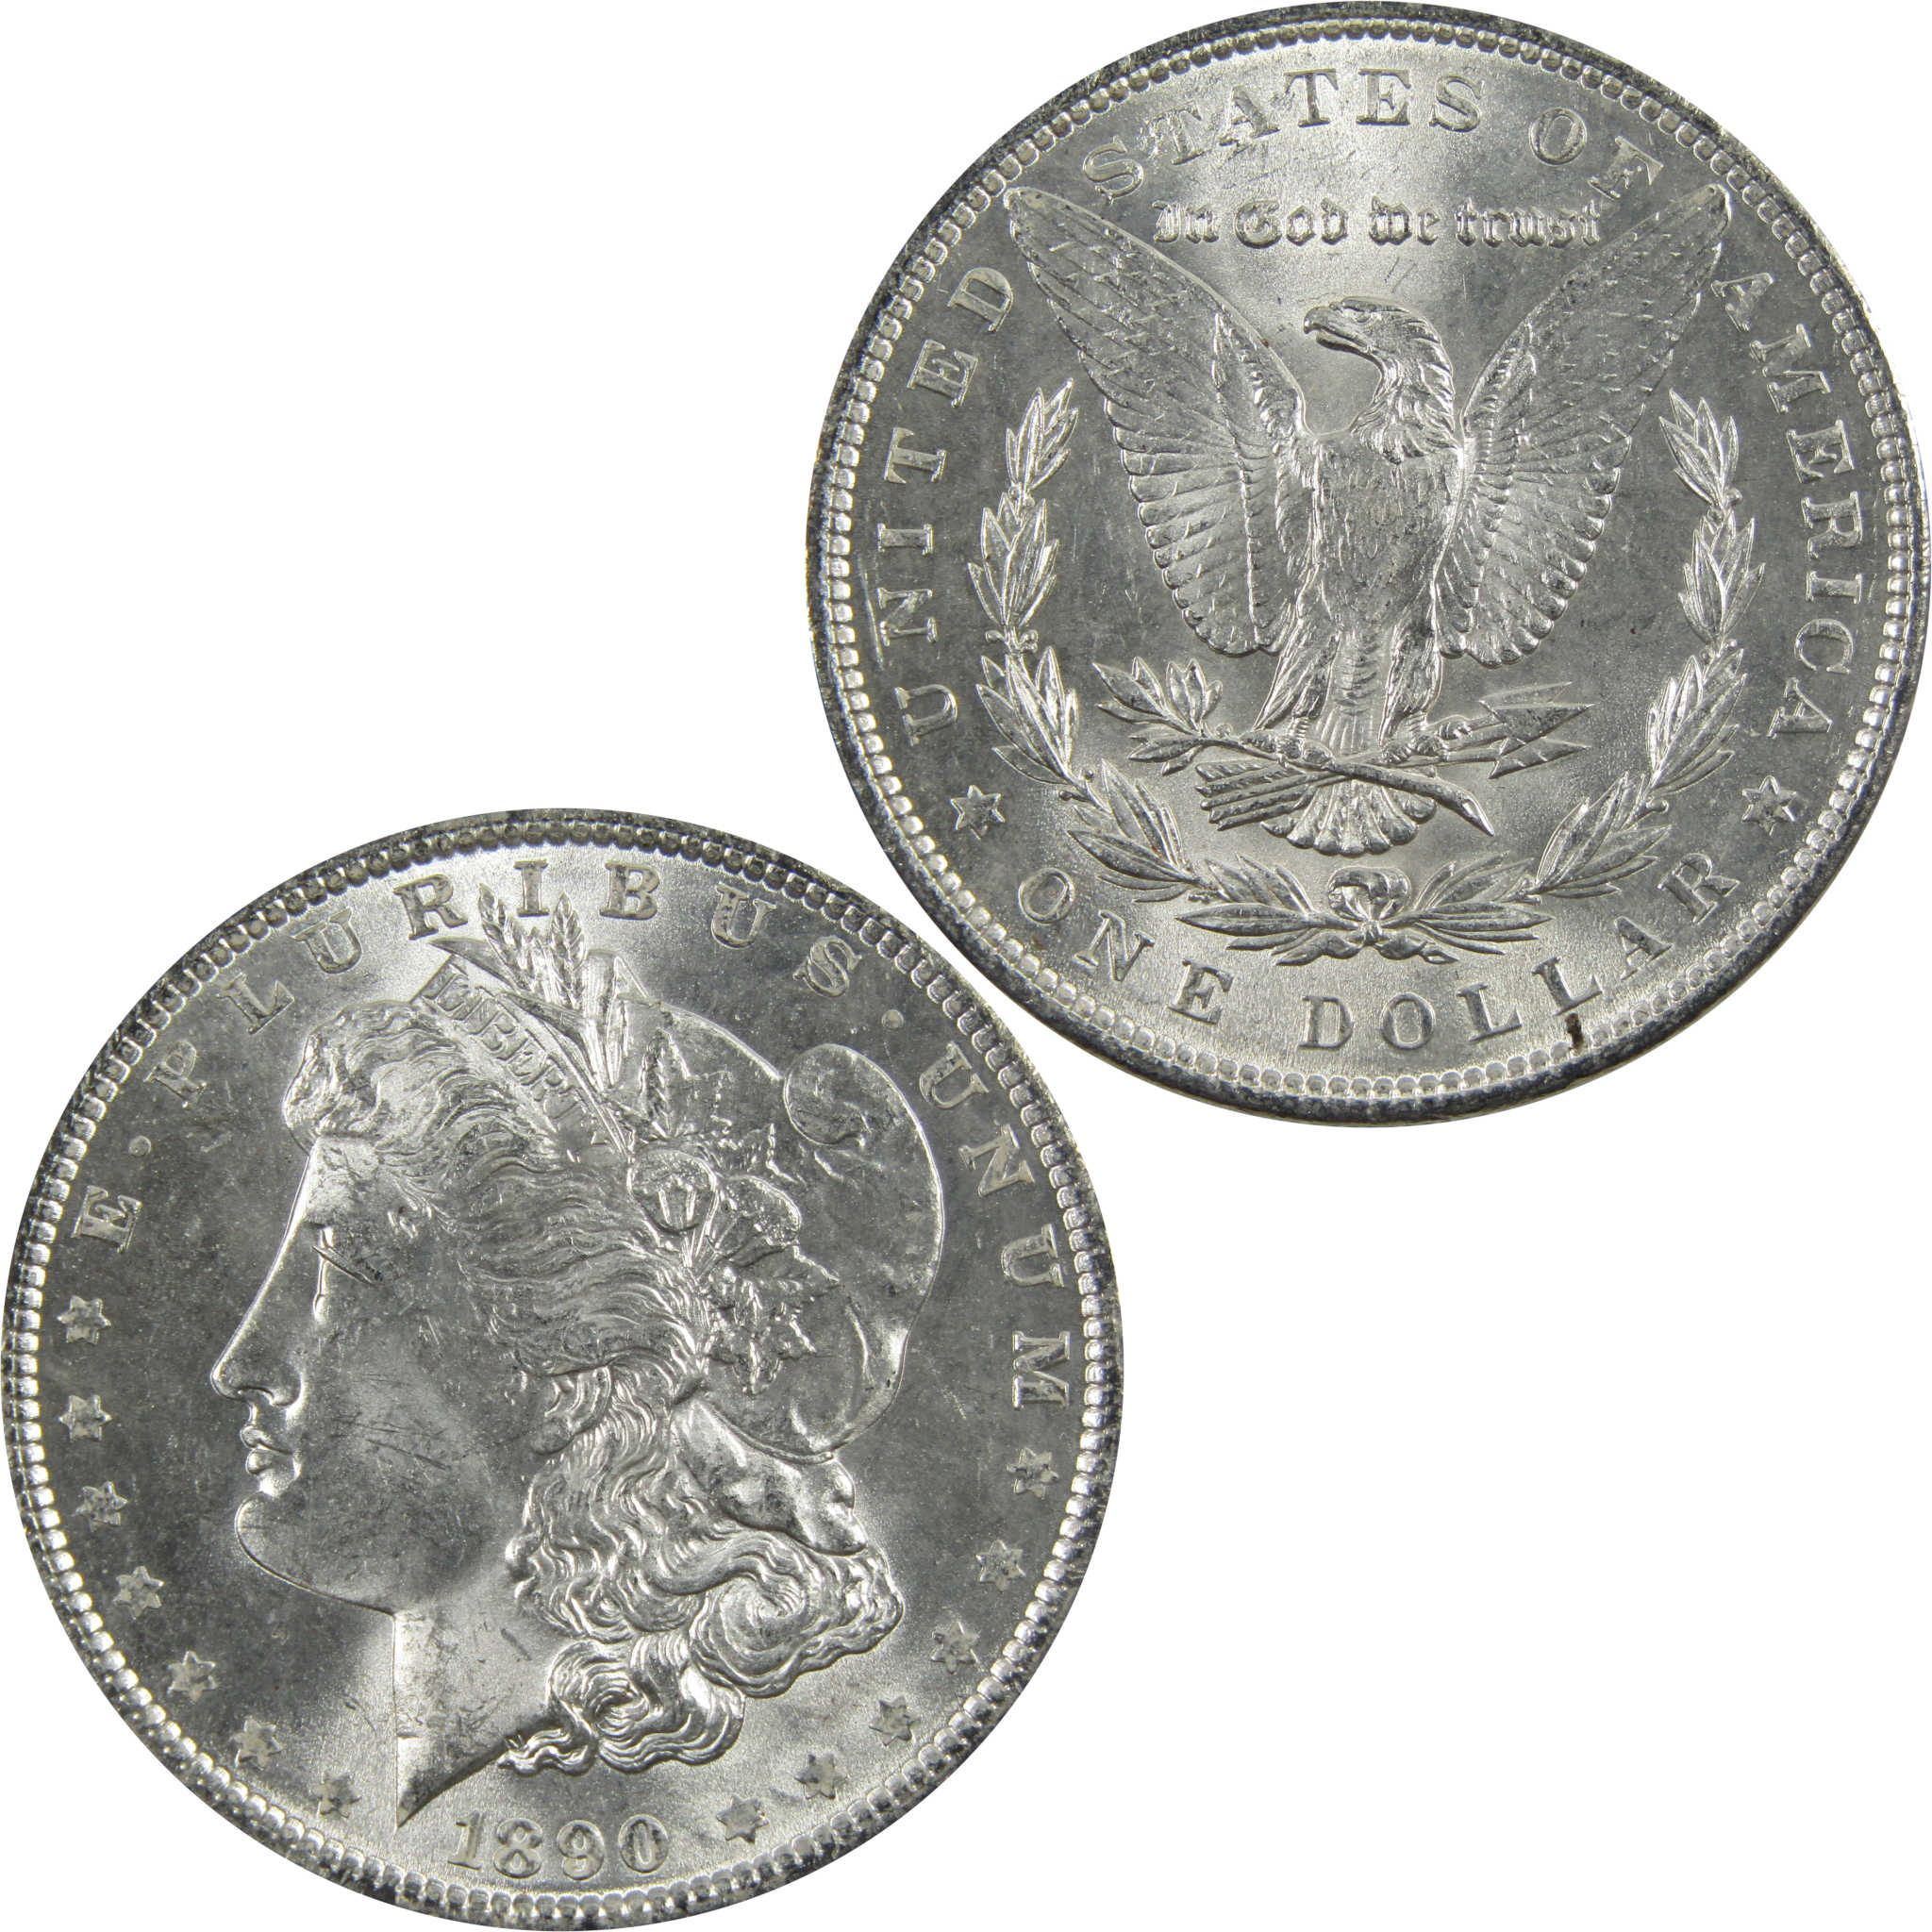 1890 Morgan Dollar BU Uncirculated 90% Silver $1 Coin SKU:I5135 - Morgan coin - Morgan silver dollar - Morgan silver dollar for sale - Profile Coins &amp; Collectibles